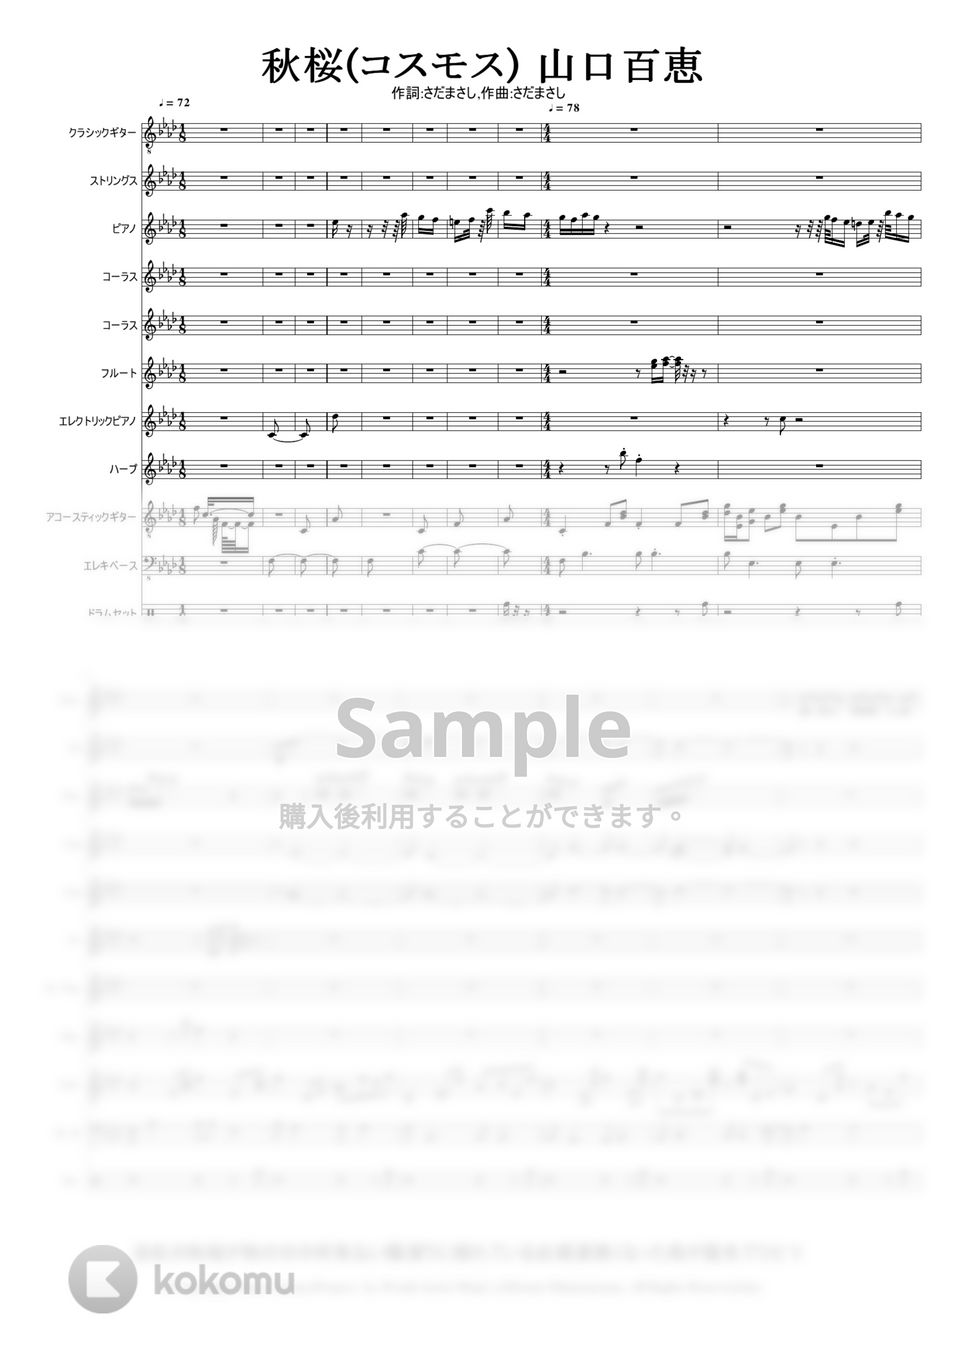 歌手　山口百恵 　作詞　作曲　さだまさし - 秋桜 (JASRAC 作品コード 032-1462-1) by Mitsuru Minamiyama